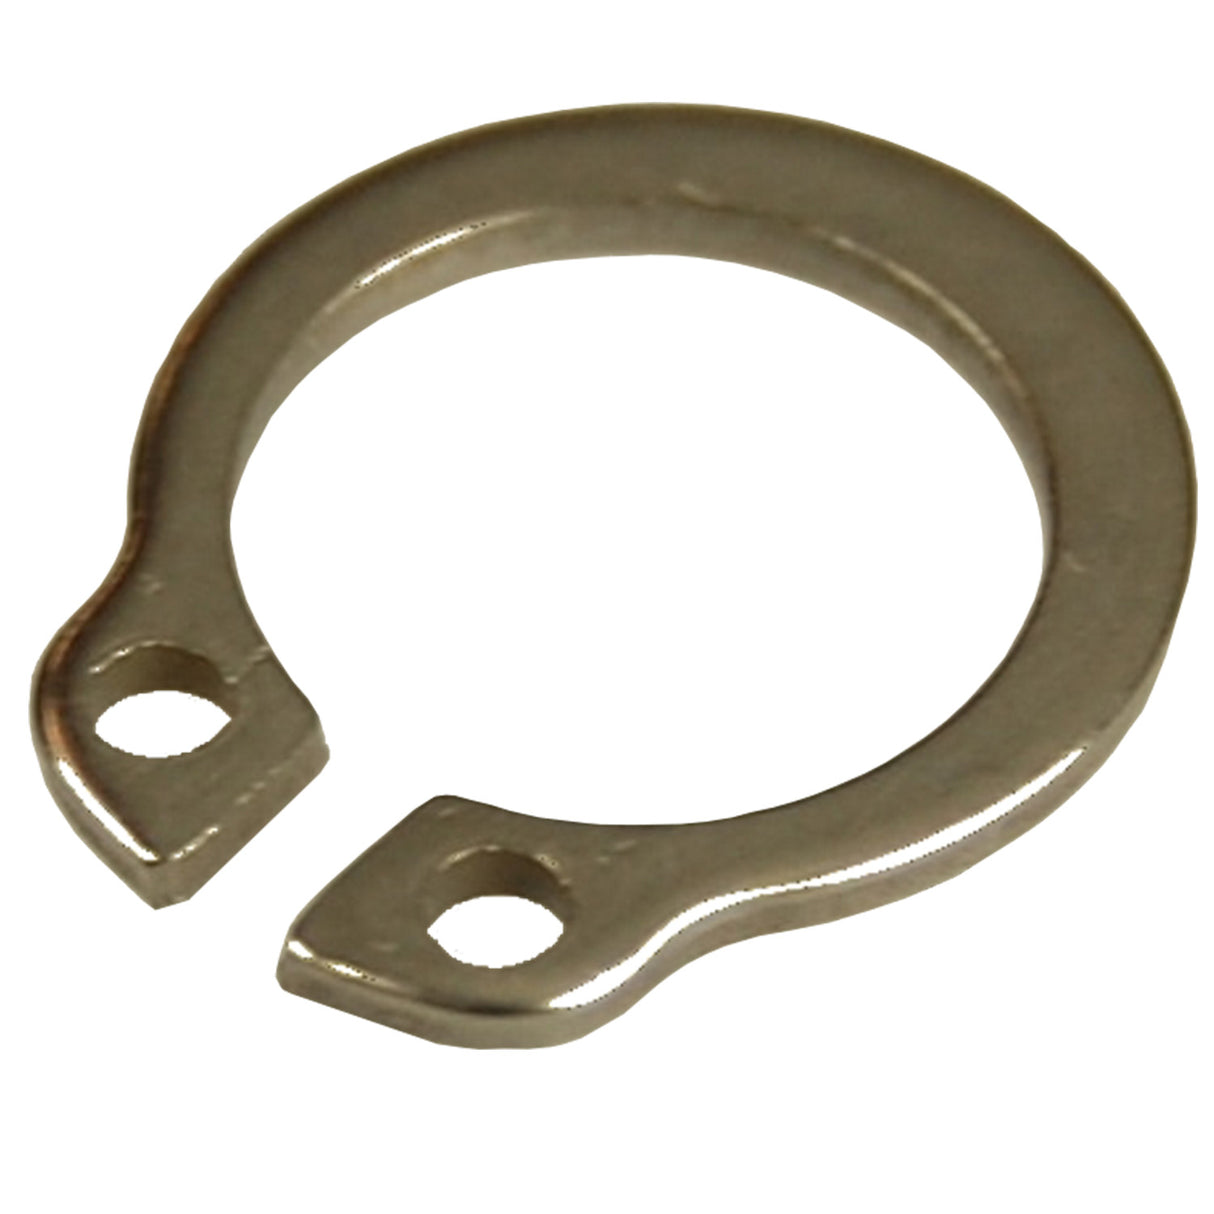 Seegerring - Retaining ring stainless steel vacuum valve Lely